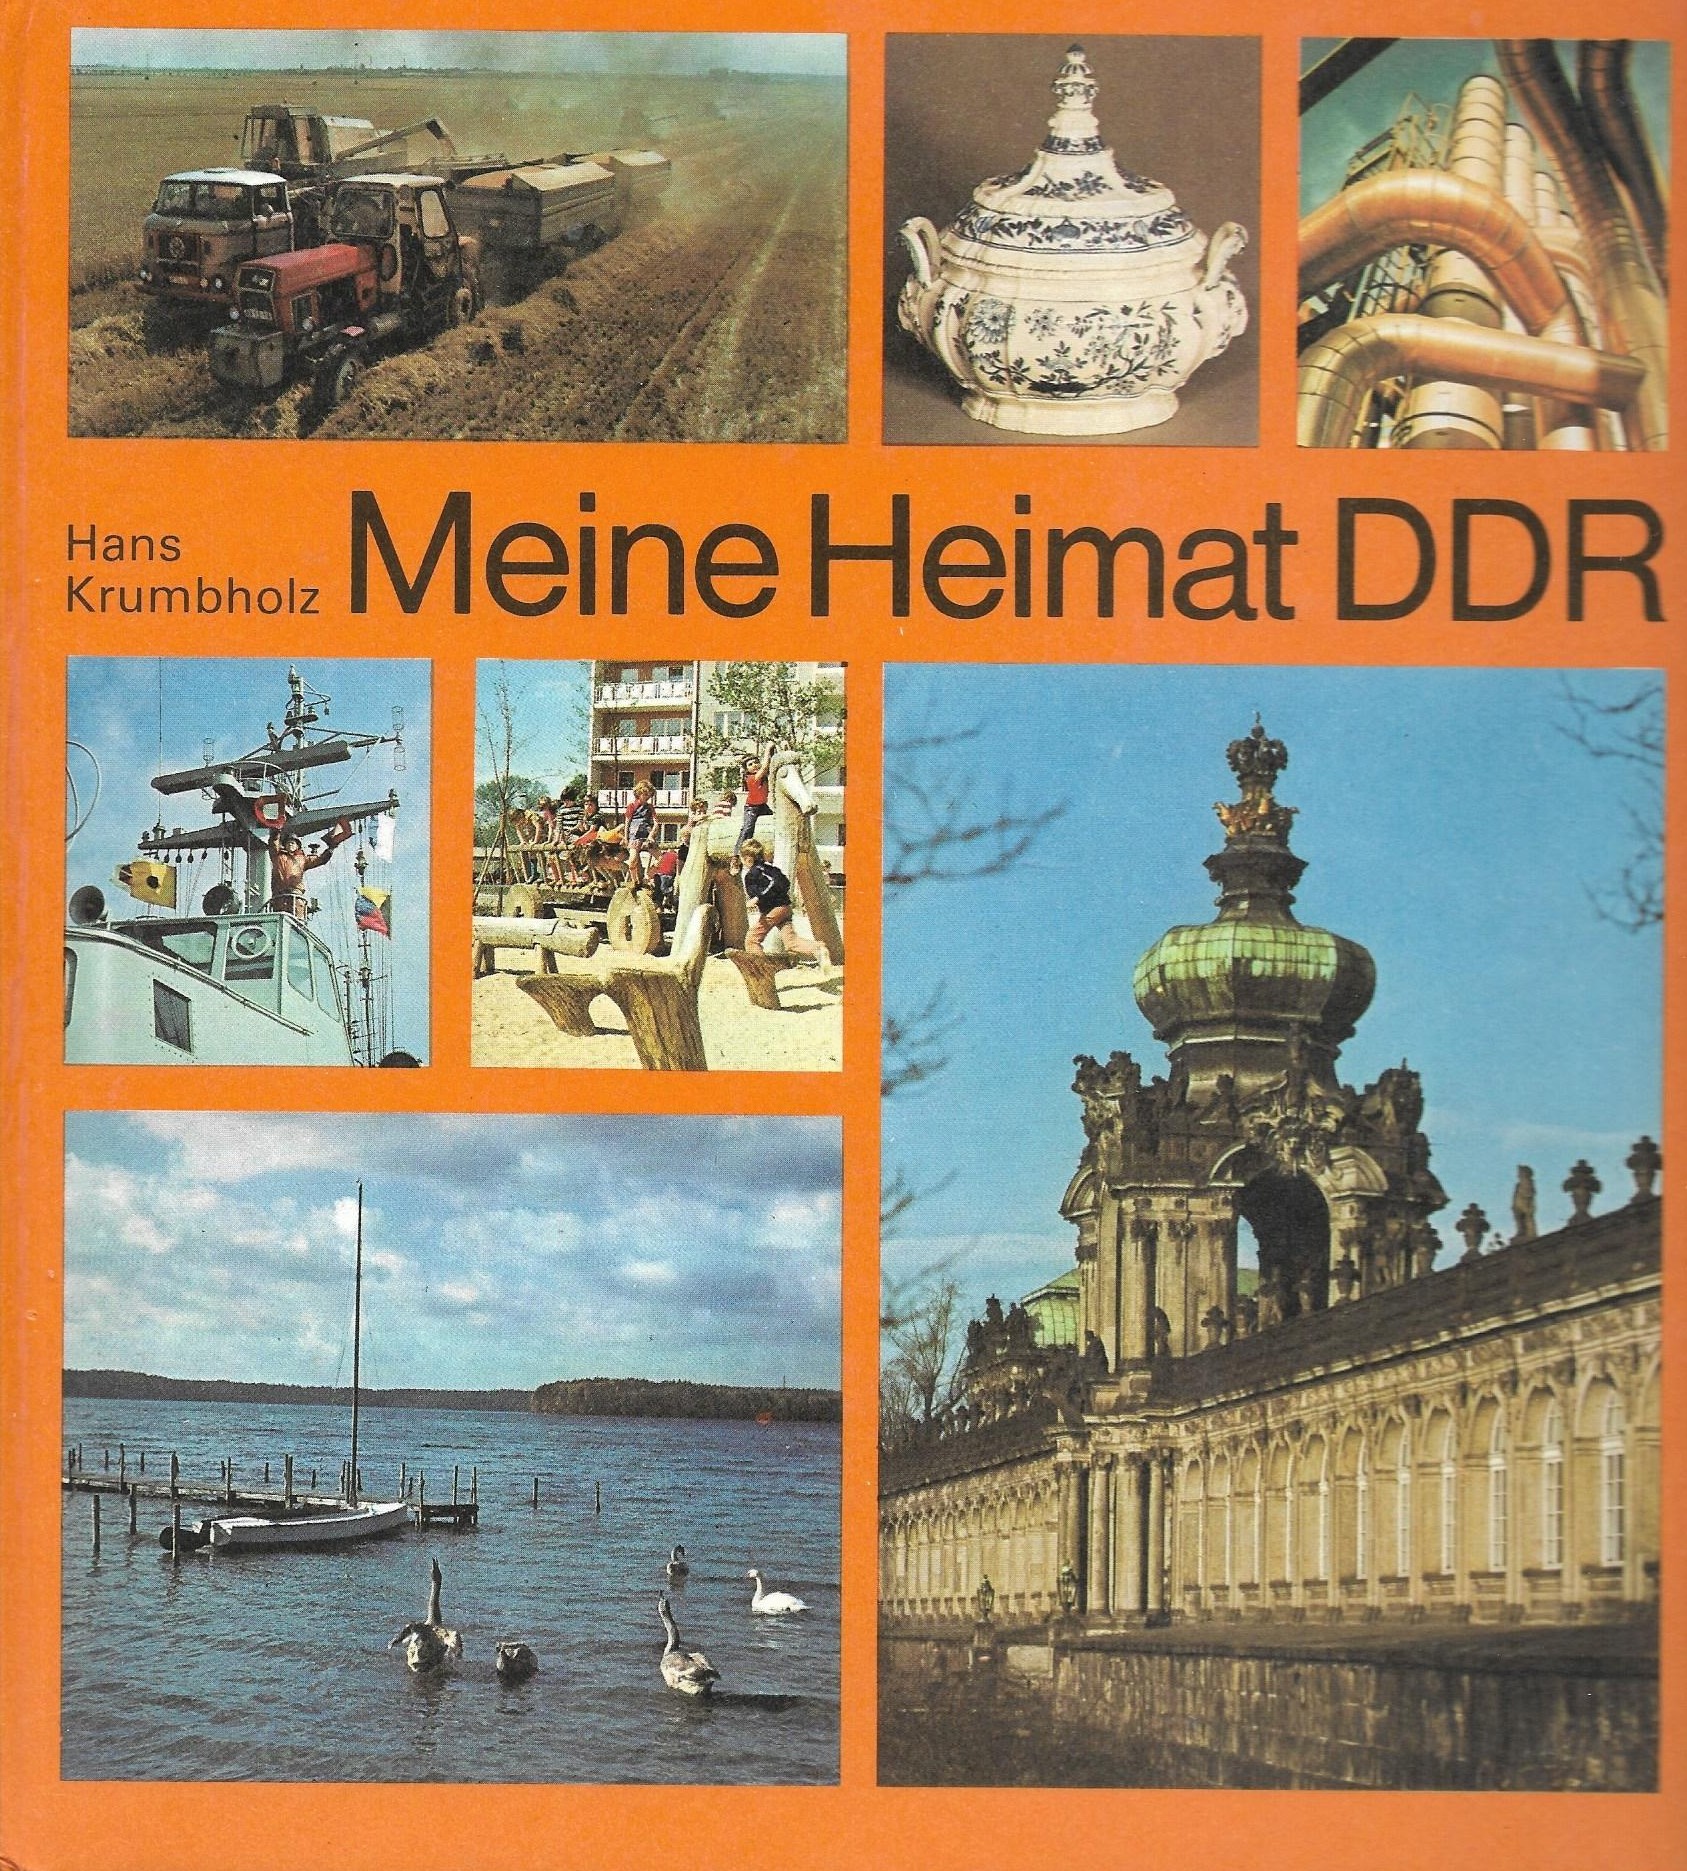 Heimat DDR